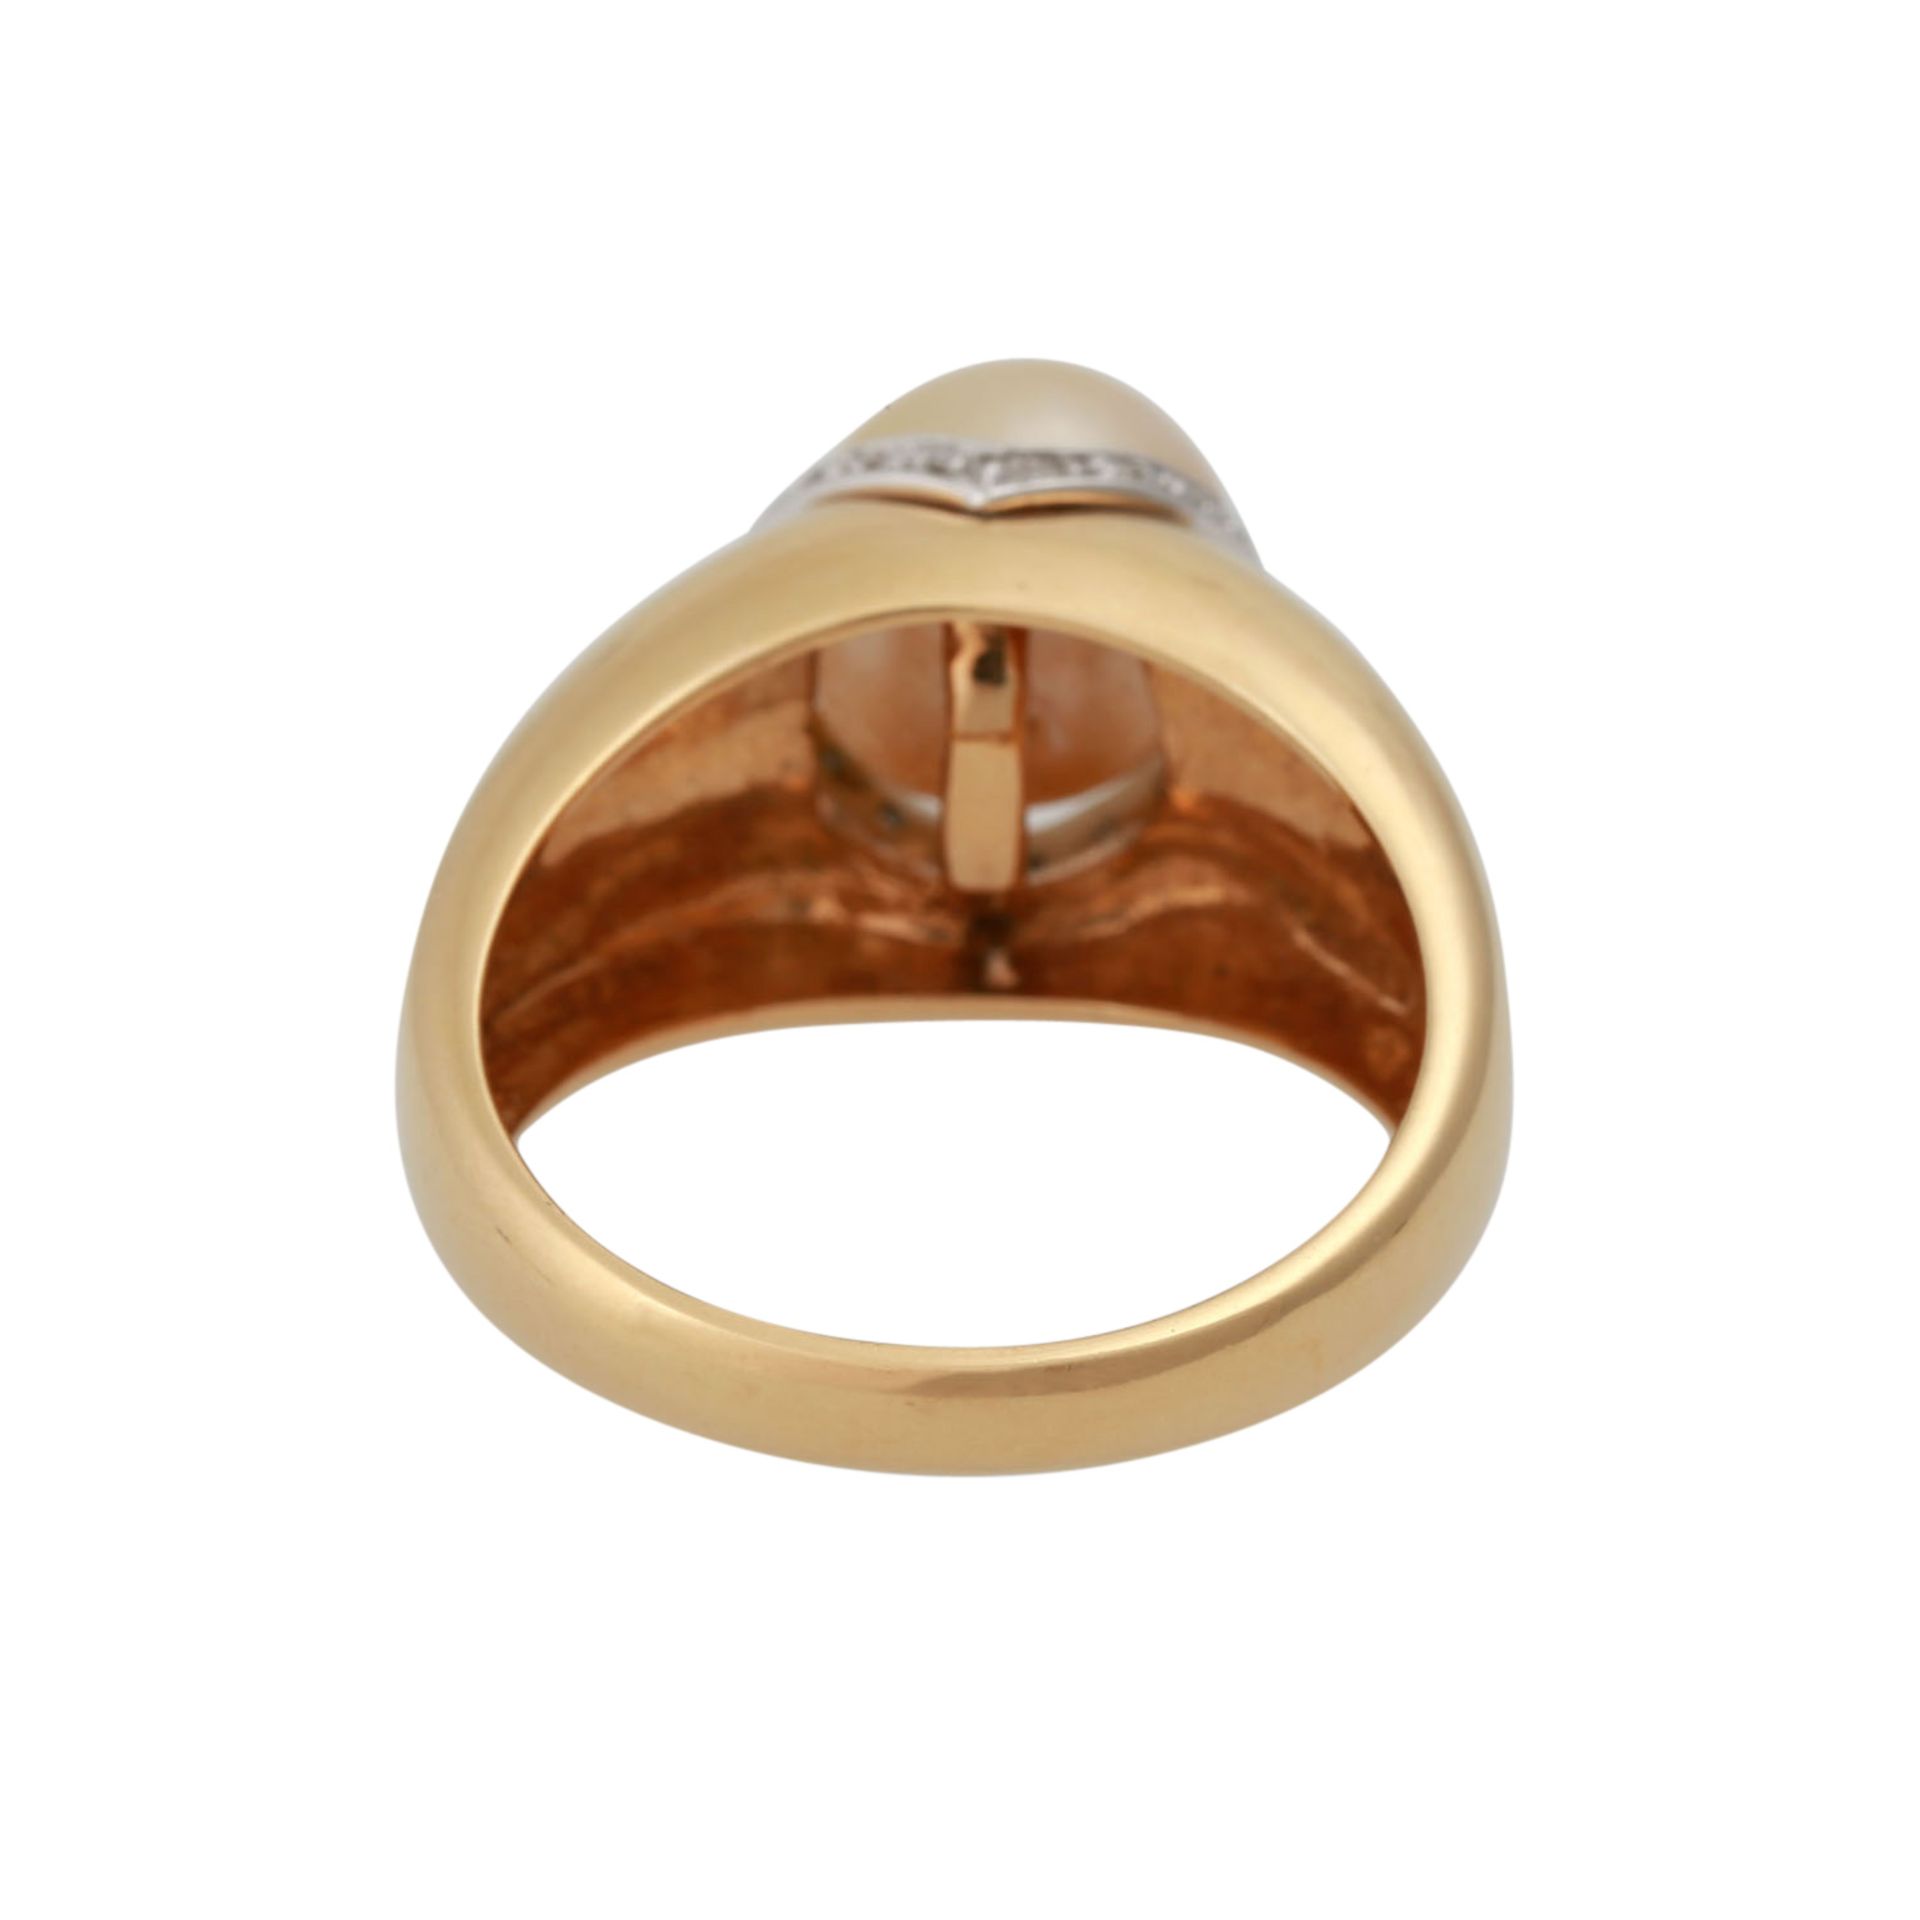 Ring mit goldfarbener Zuchtperlevon ca. 9,7 mm, kleine Diamanten, GG 18K, RW: 61, 20./21. Jh., - Bild 4 aus 4